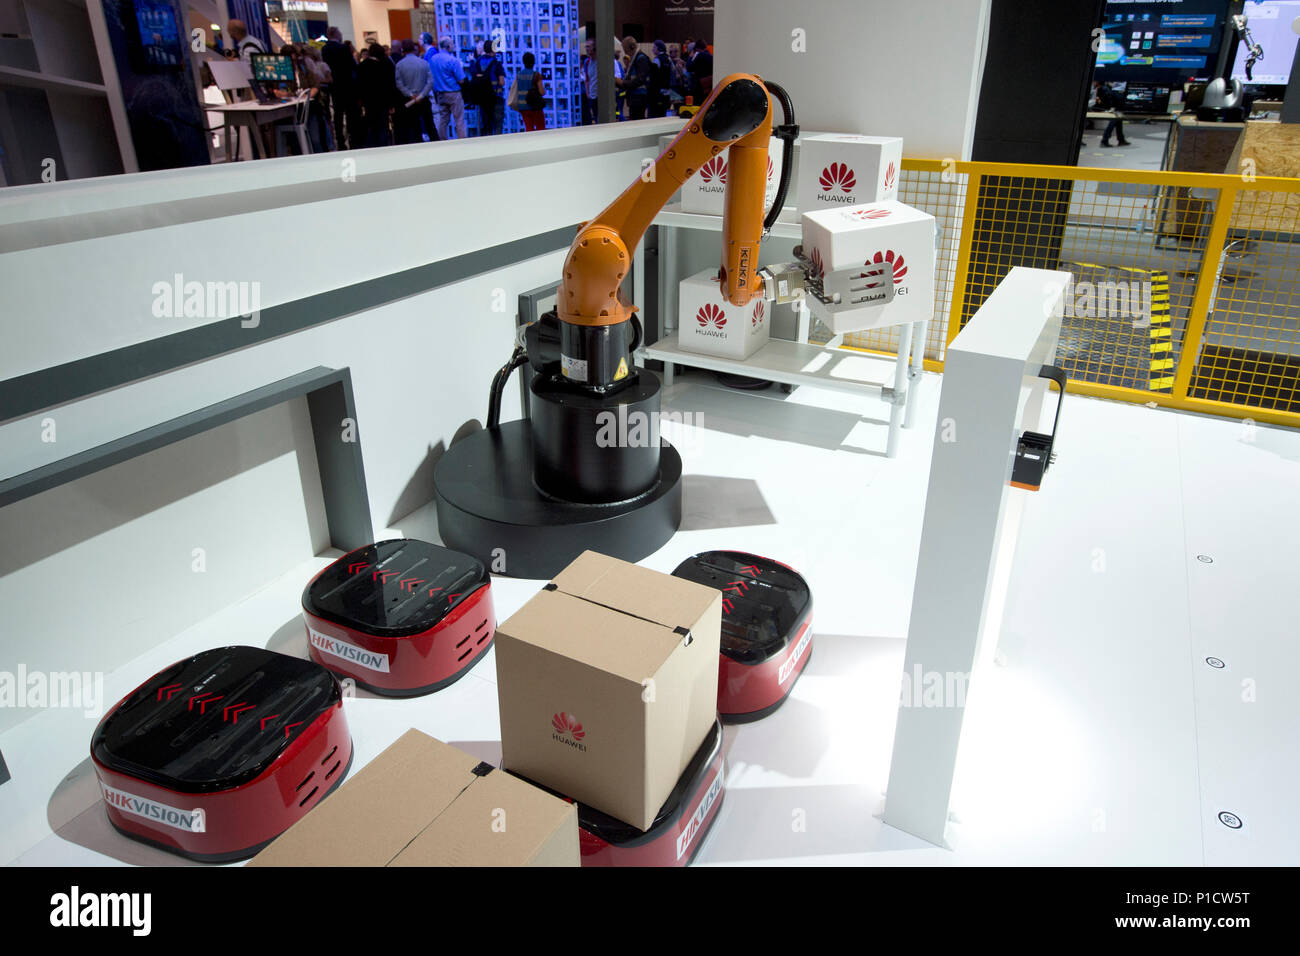 Hannover, Alemania. 11 de junio, 2018. Un brazo robot en el stand de Huawei estará cargando una parcela, centro de paquetería, logística, manipulación de mercancías, la Feria Internacional CeBIT en Hannover, el 11.06.2018. | Uso de crédito en todo el mundo: dpa/Alamy Live News Foto de stock